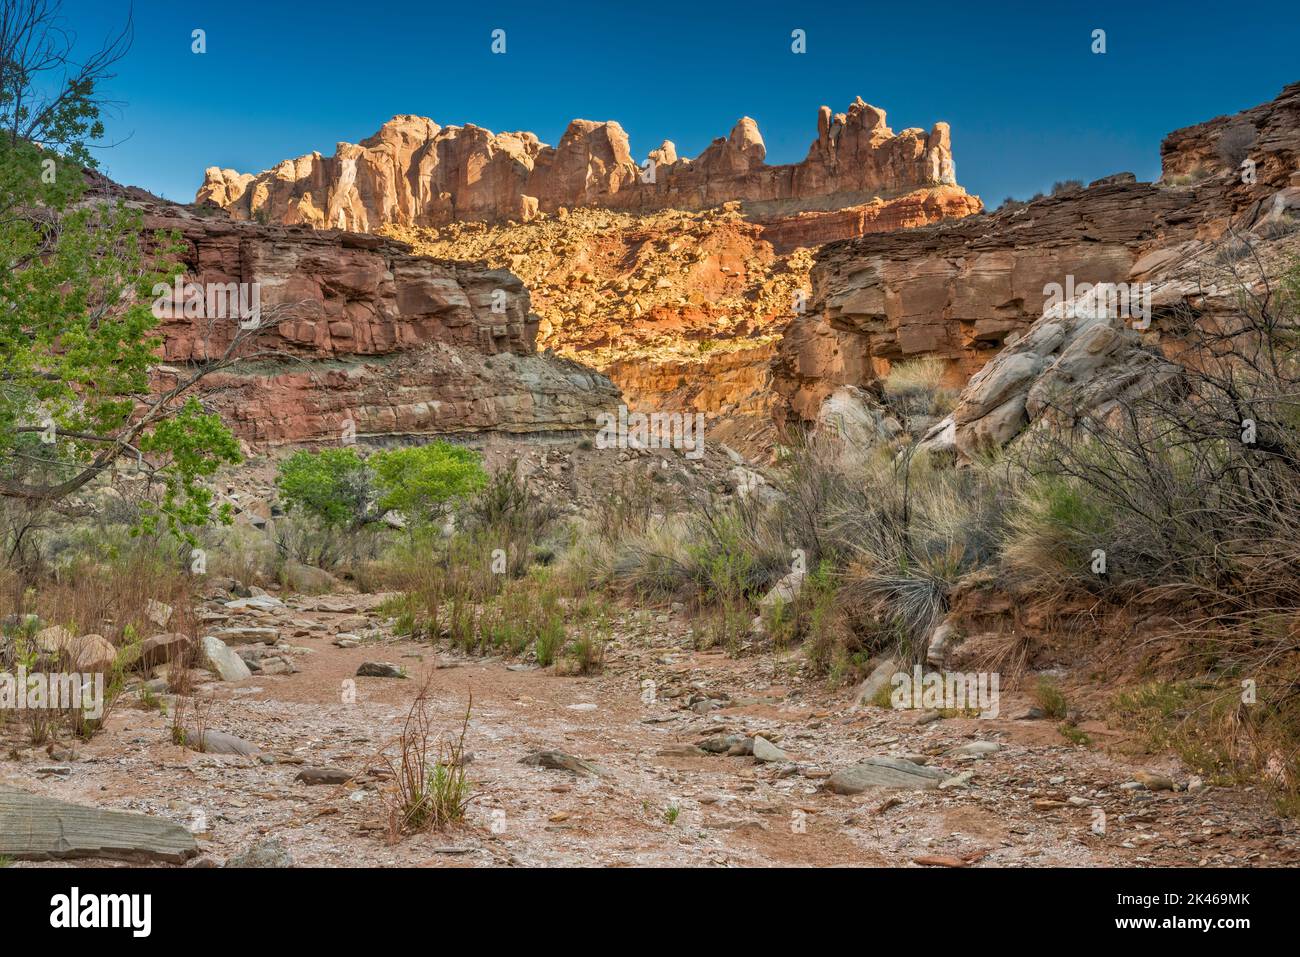 Formaciones rocosas de arenisca de Coconino sin nombre sobre Chute Canyon, Little Ocean Draw Wilderness, San Rafael Reef, Utah, EE.UU Foto de stock